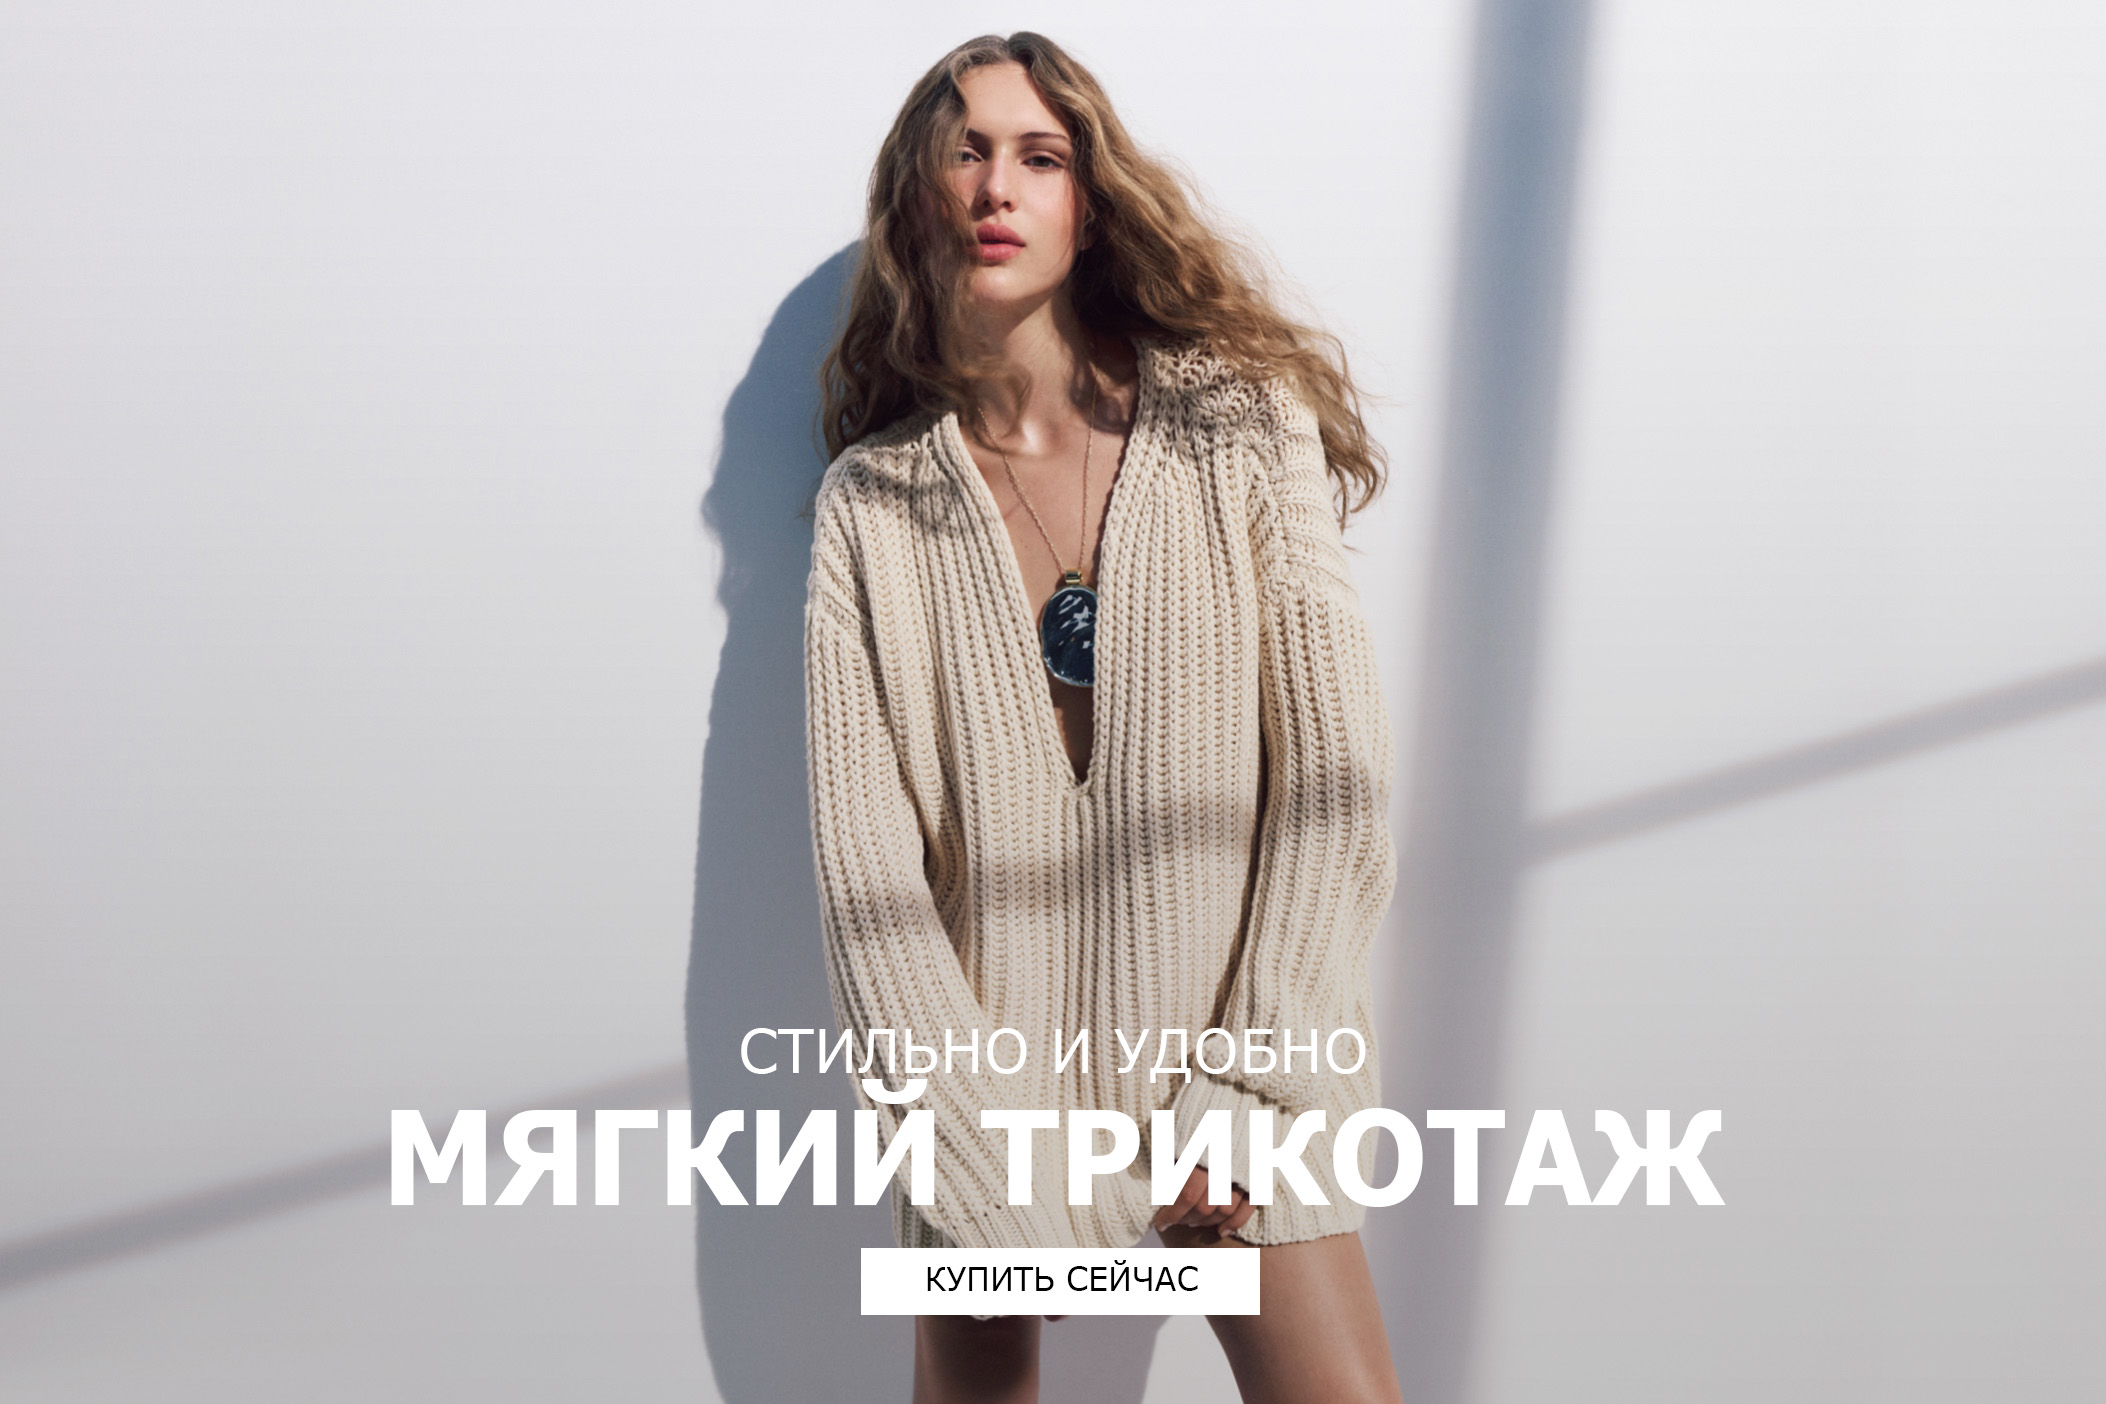 H&M - Интернет-магазин модной одежды. Доставка по всей России.